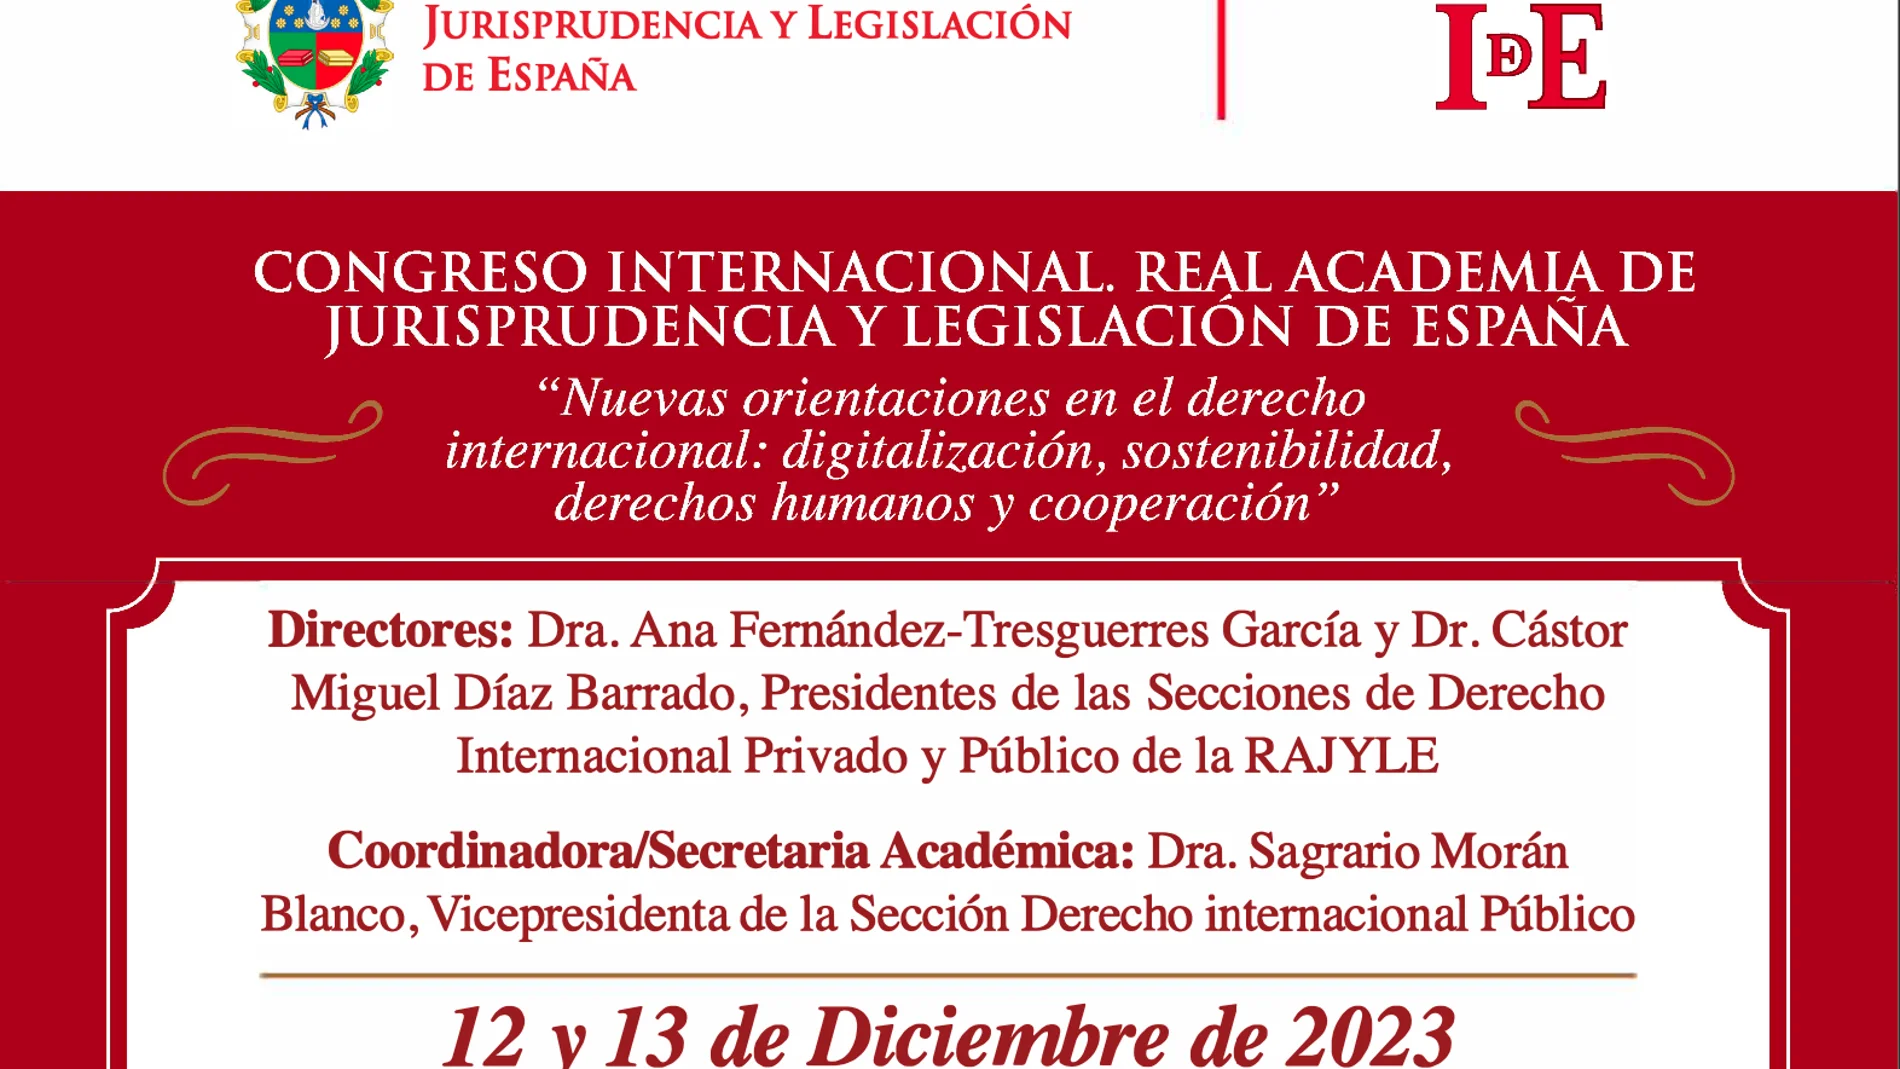 Cartel del congreso internacional organizado por la Real Academia de Jurisprudencia y Legislación de España